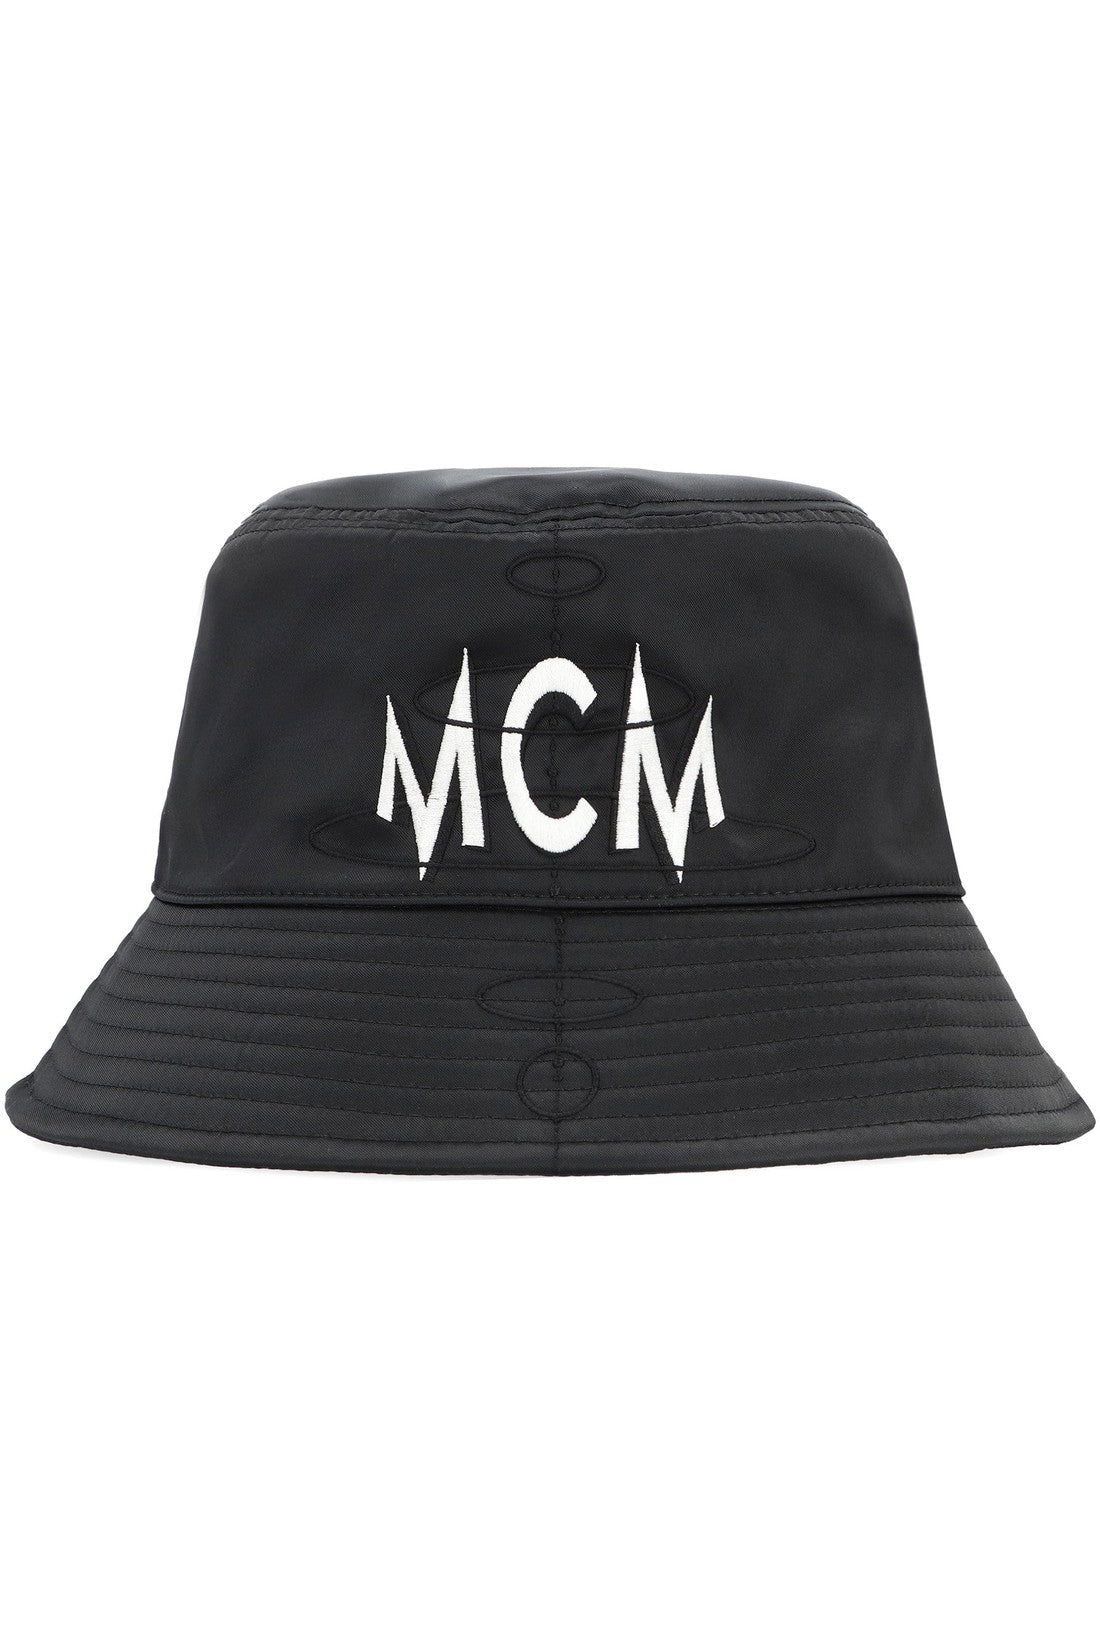 MCM-OUTLET-SALE-Bucket hat-ARCHIVIST